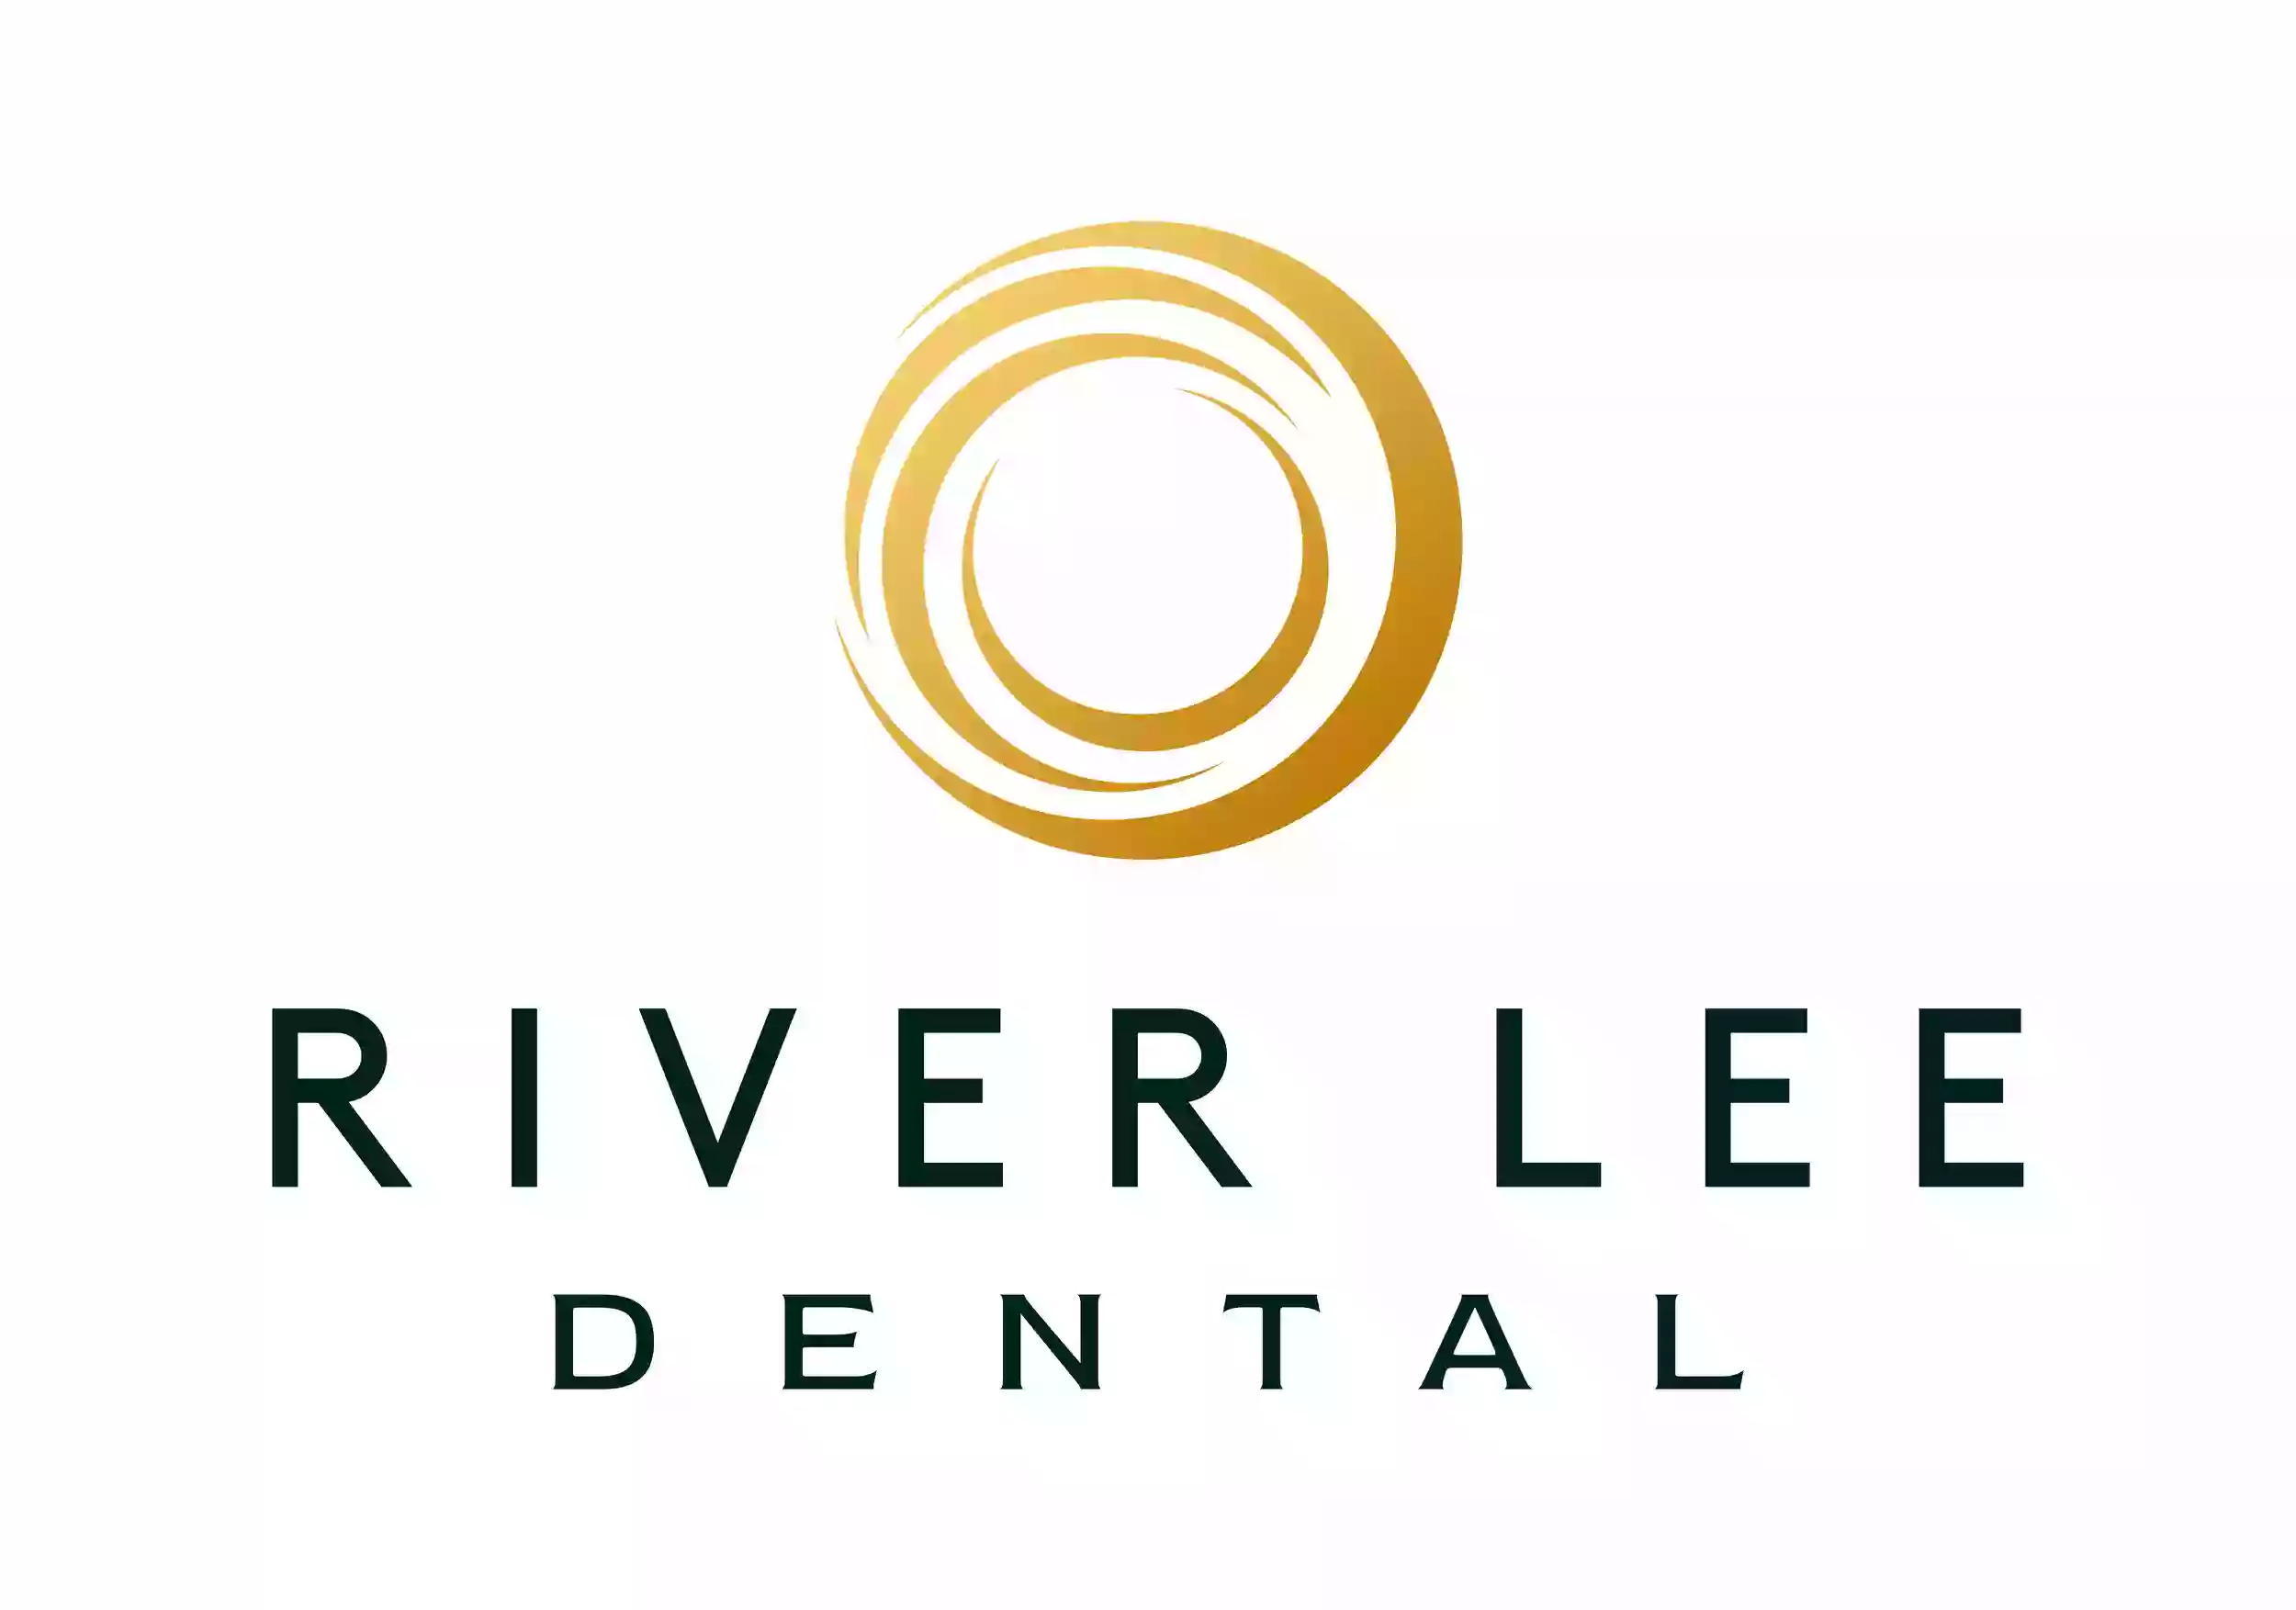 River Lee Dental